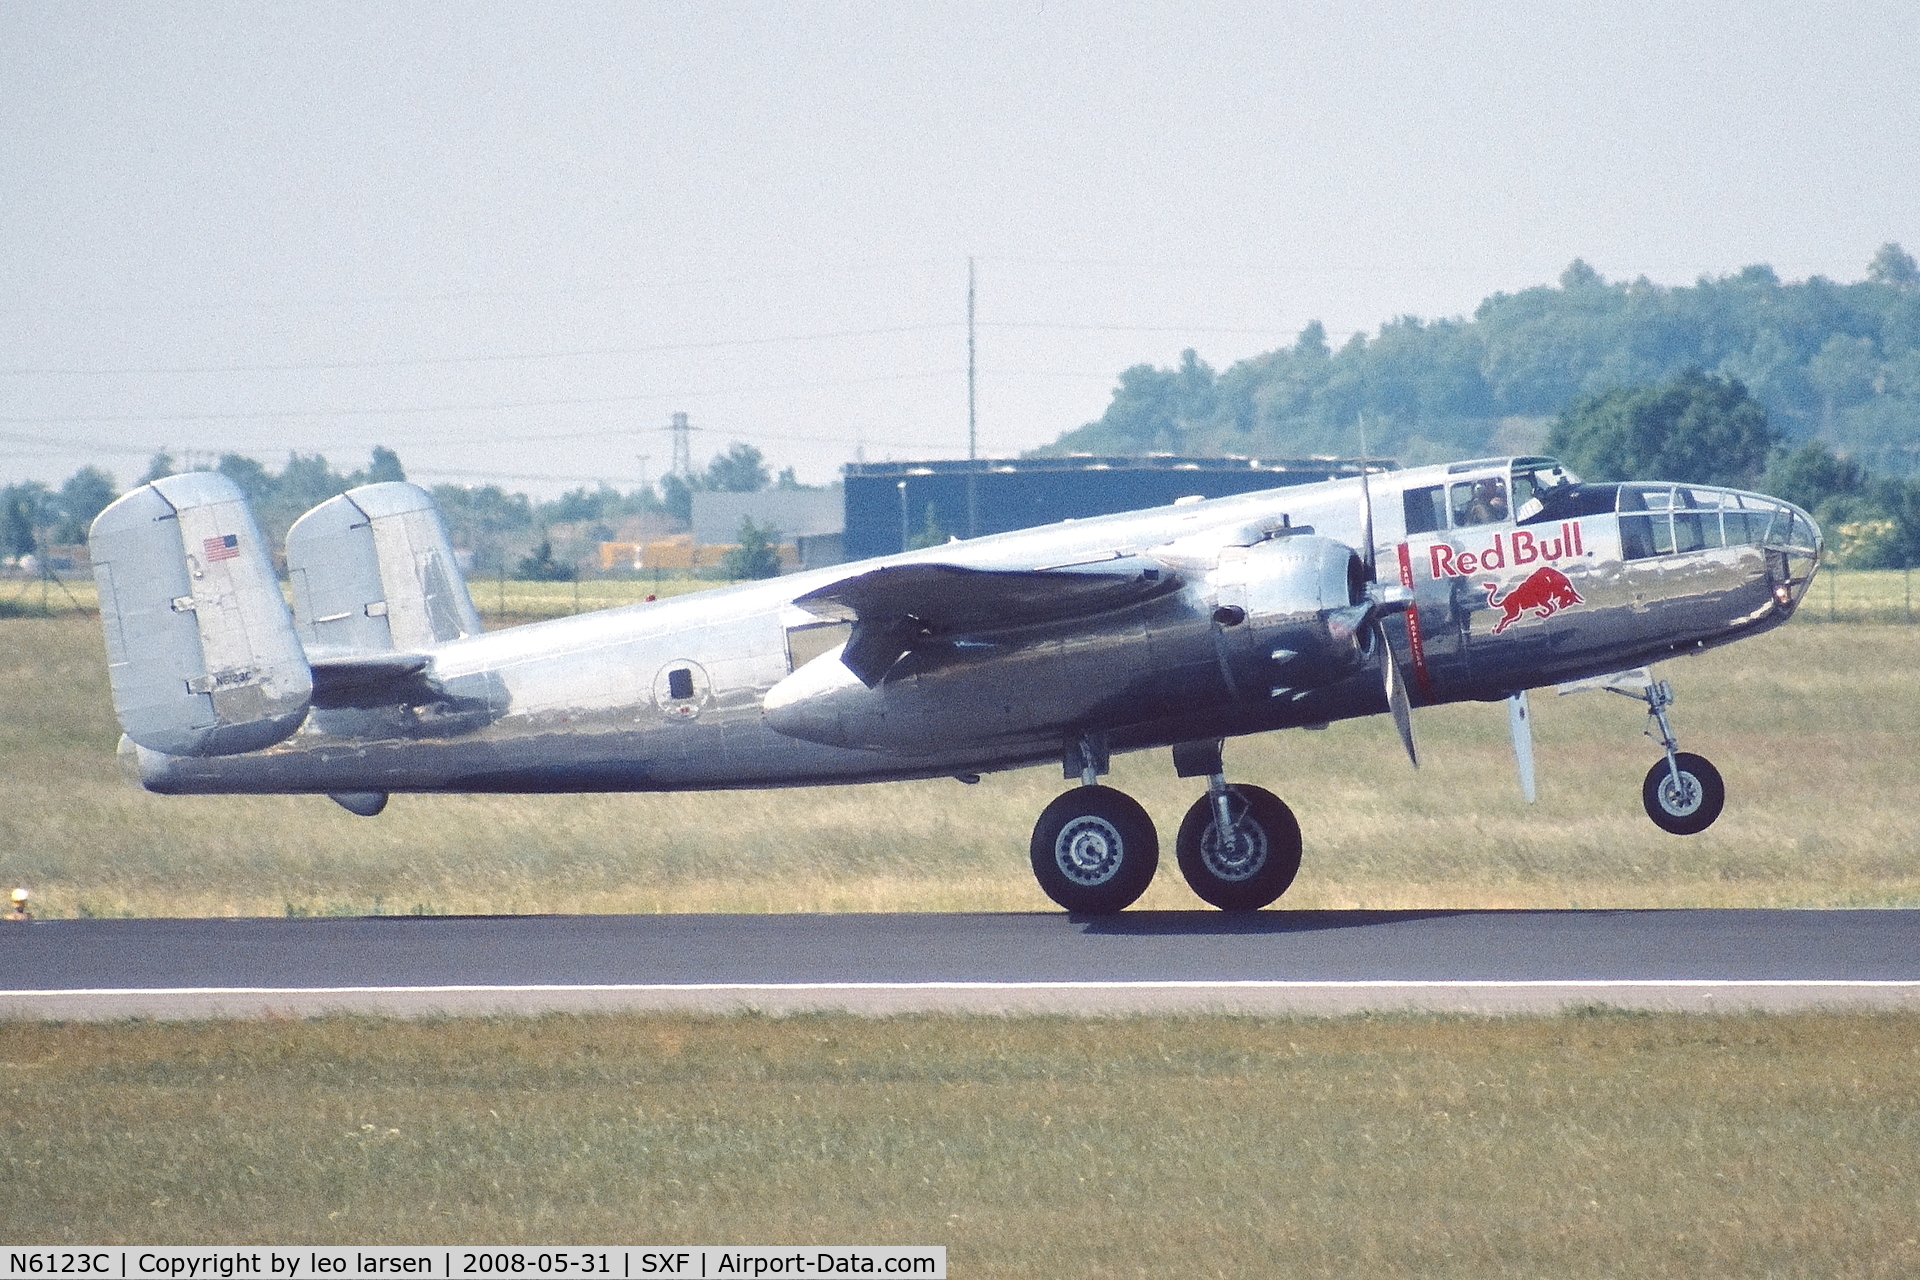 N6123C, 1945 North American B-25J-30-NC Mitchell Mitchell C/N 108-47647, Berlin Air Show 31.5.2008.landing.